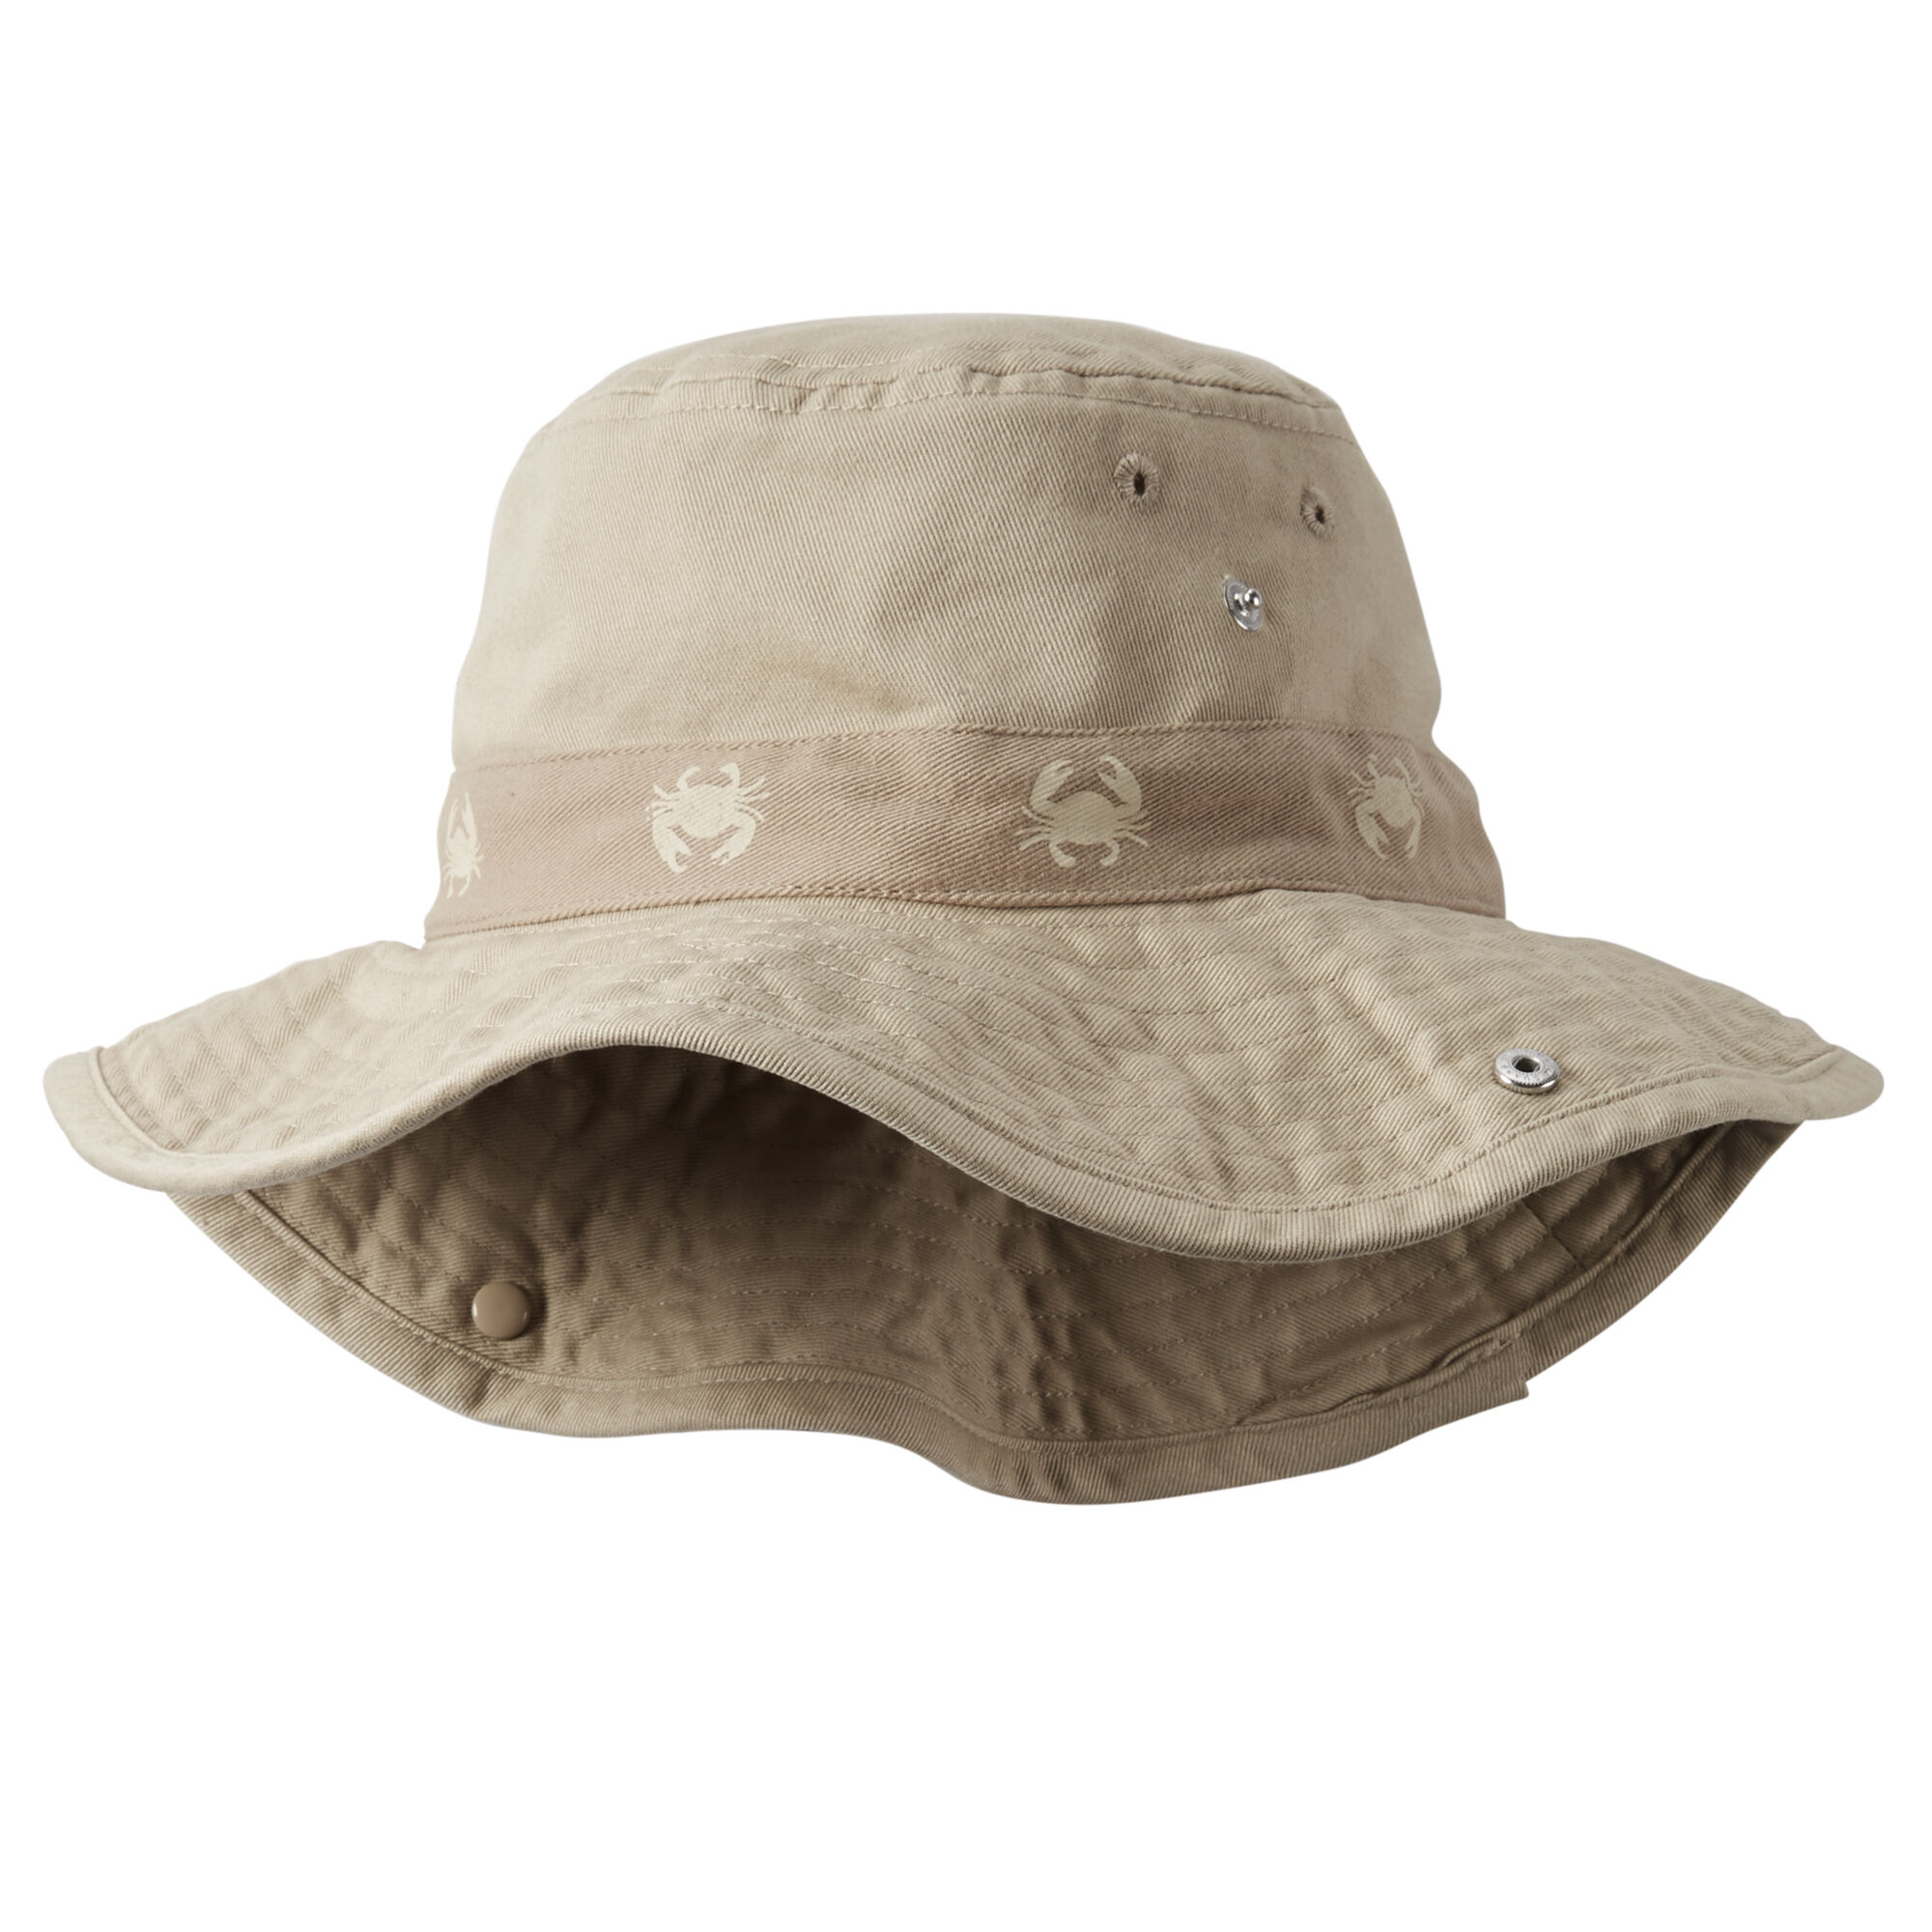 safari hats on amazon